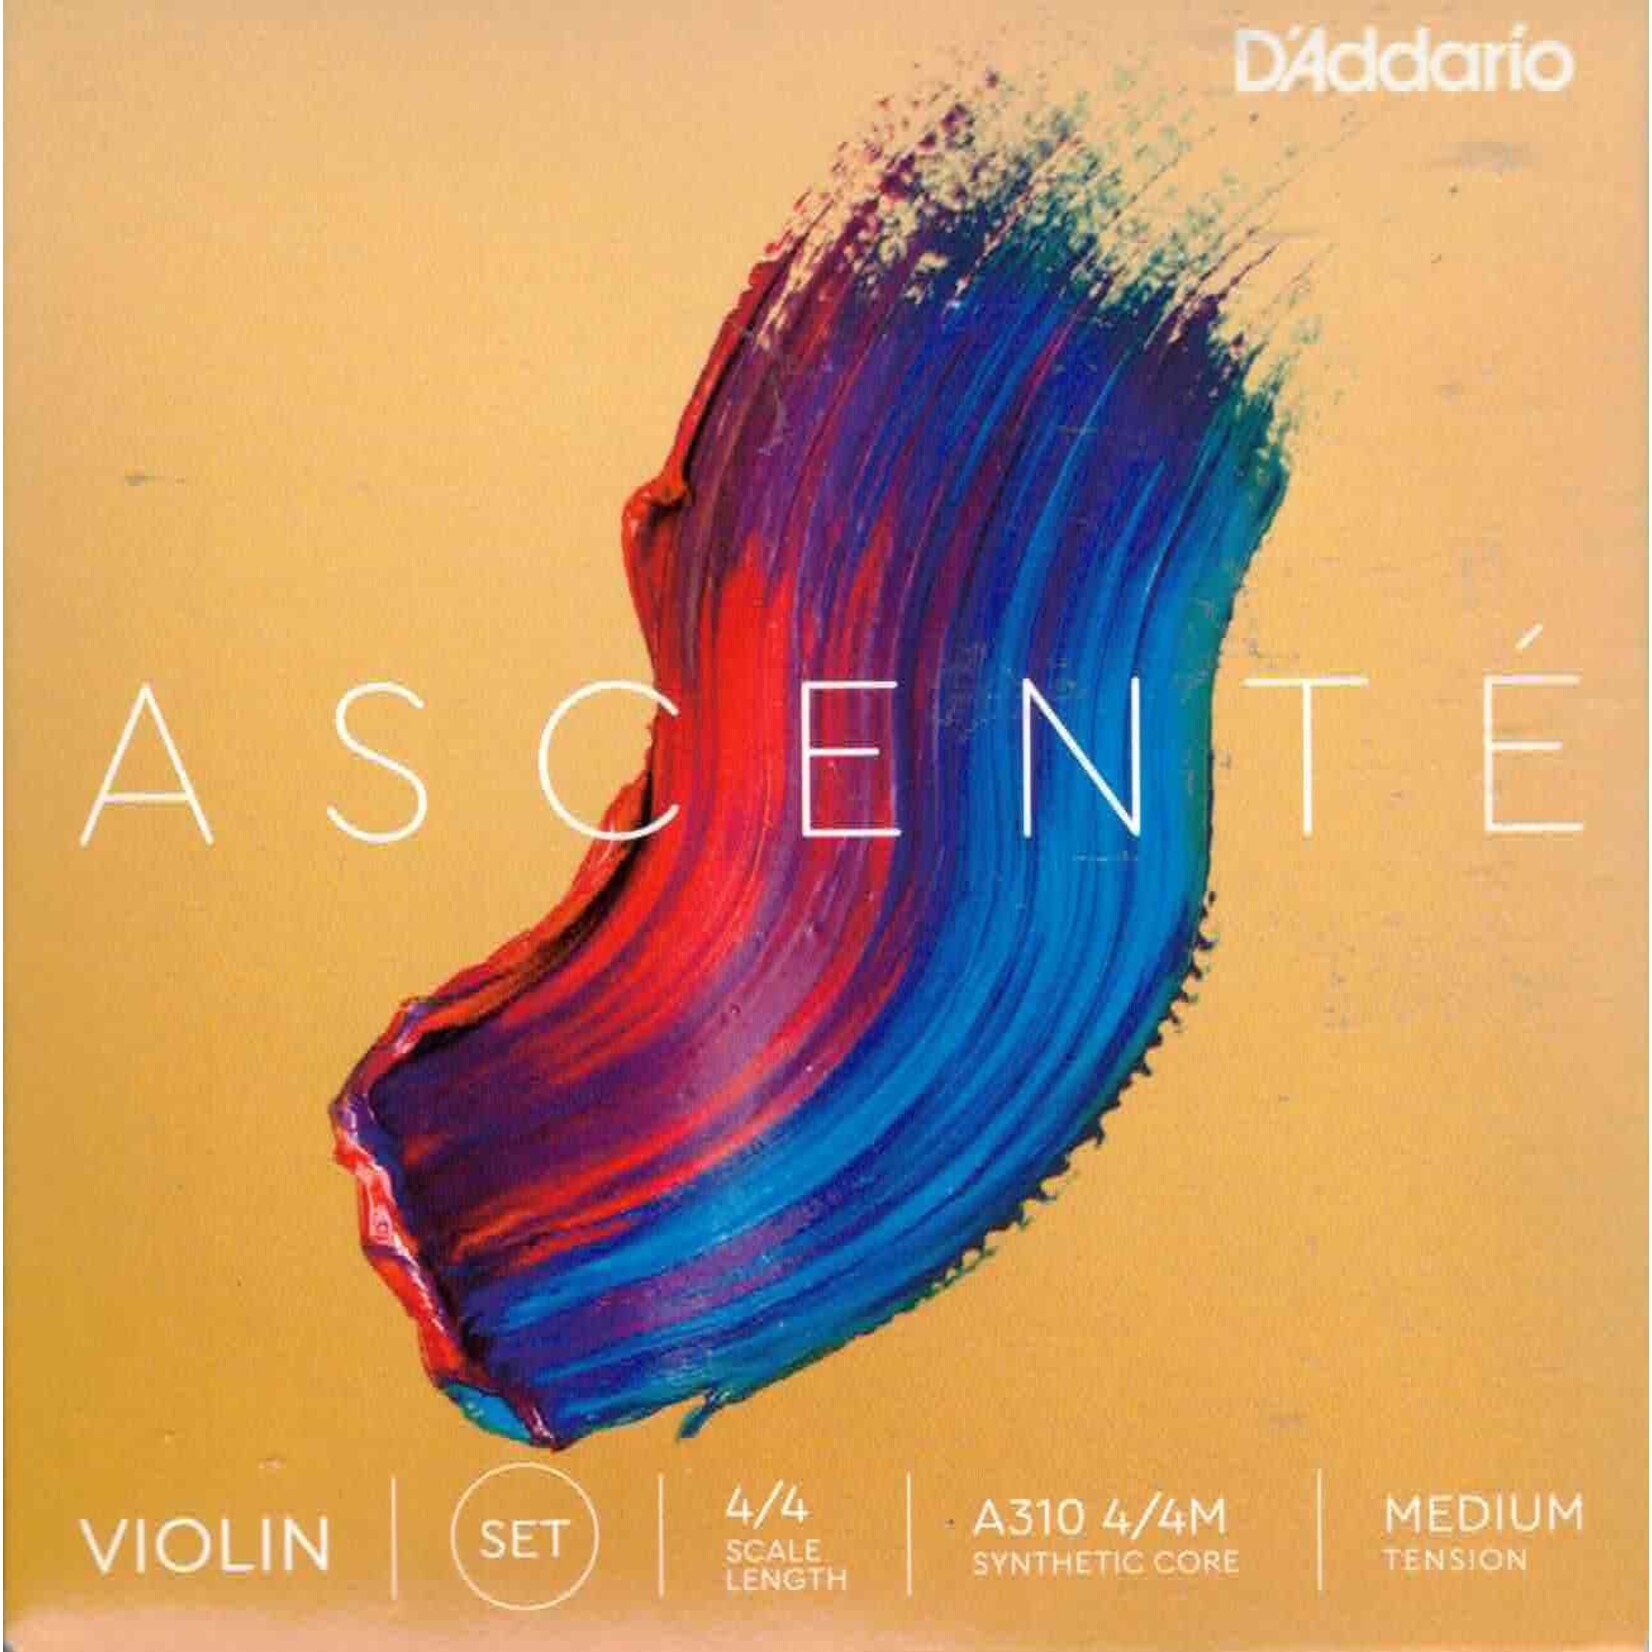 D'addario Ascente 4/4 Medium Tension Violin Strings